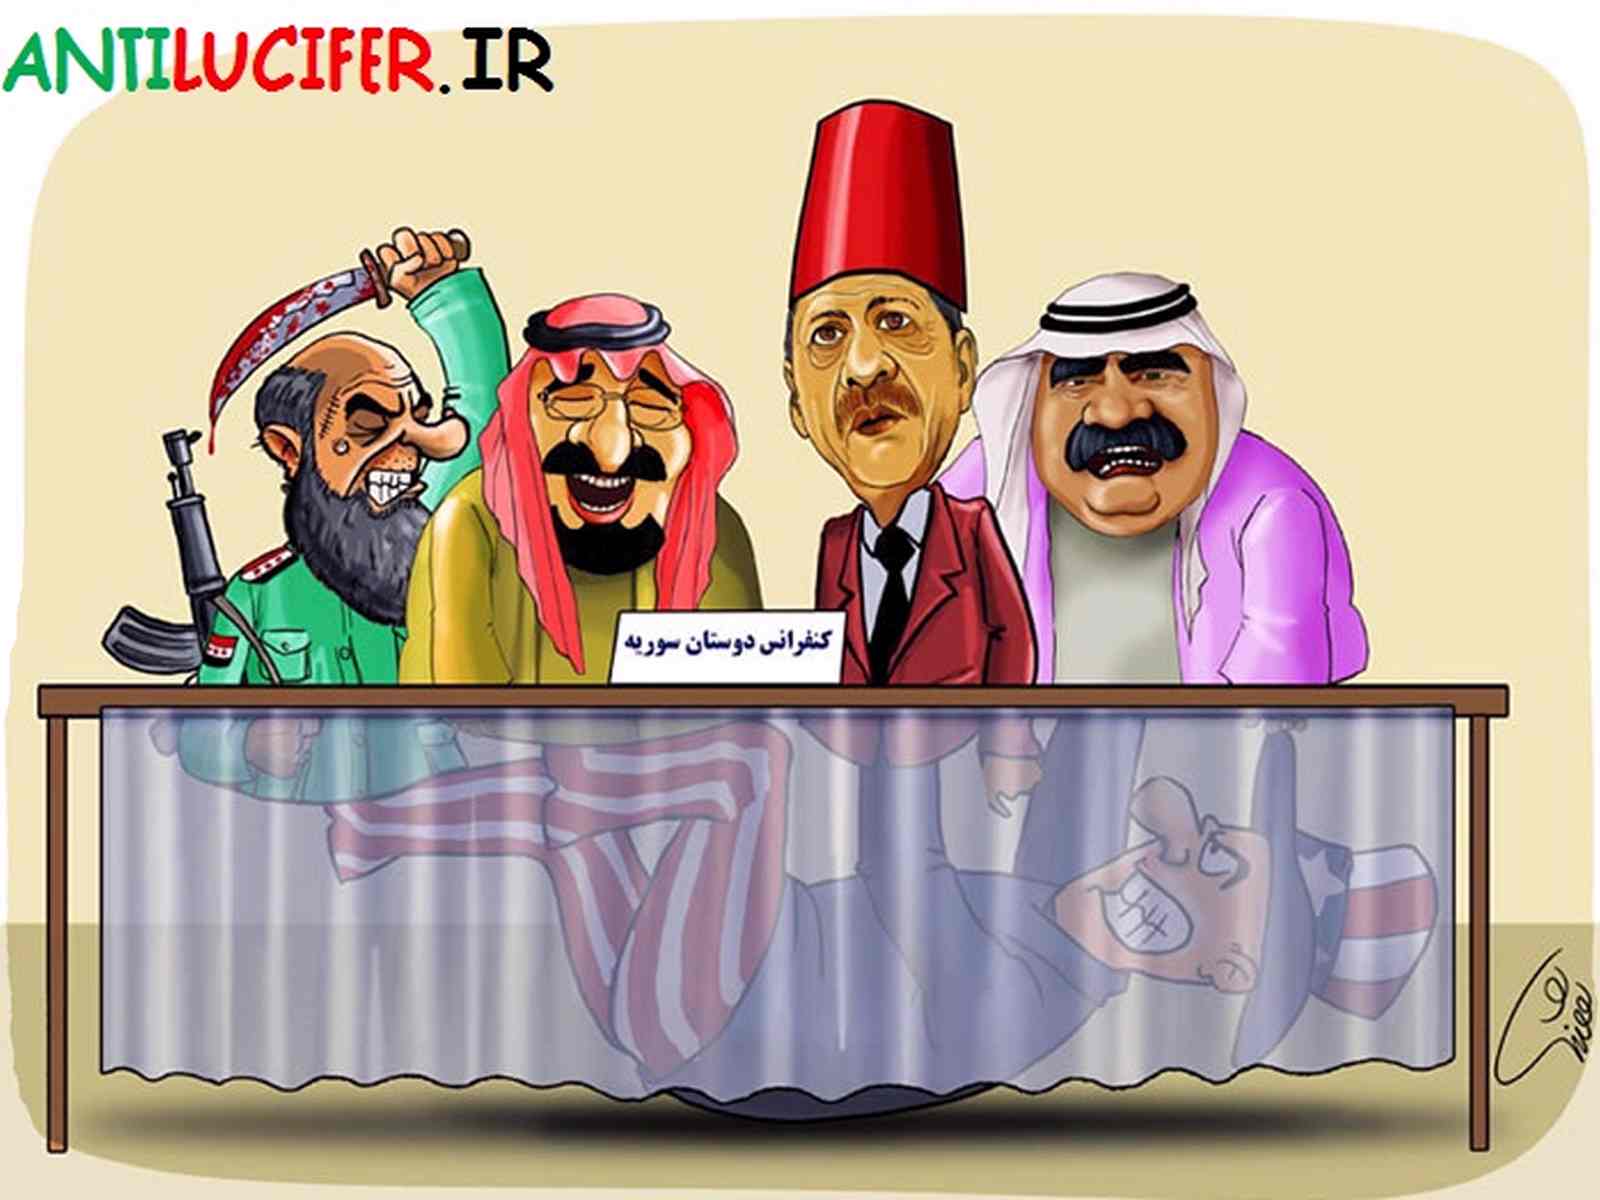 کاریکاتور با موضوع سوریه